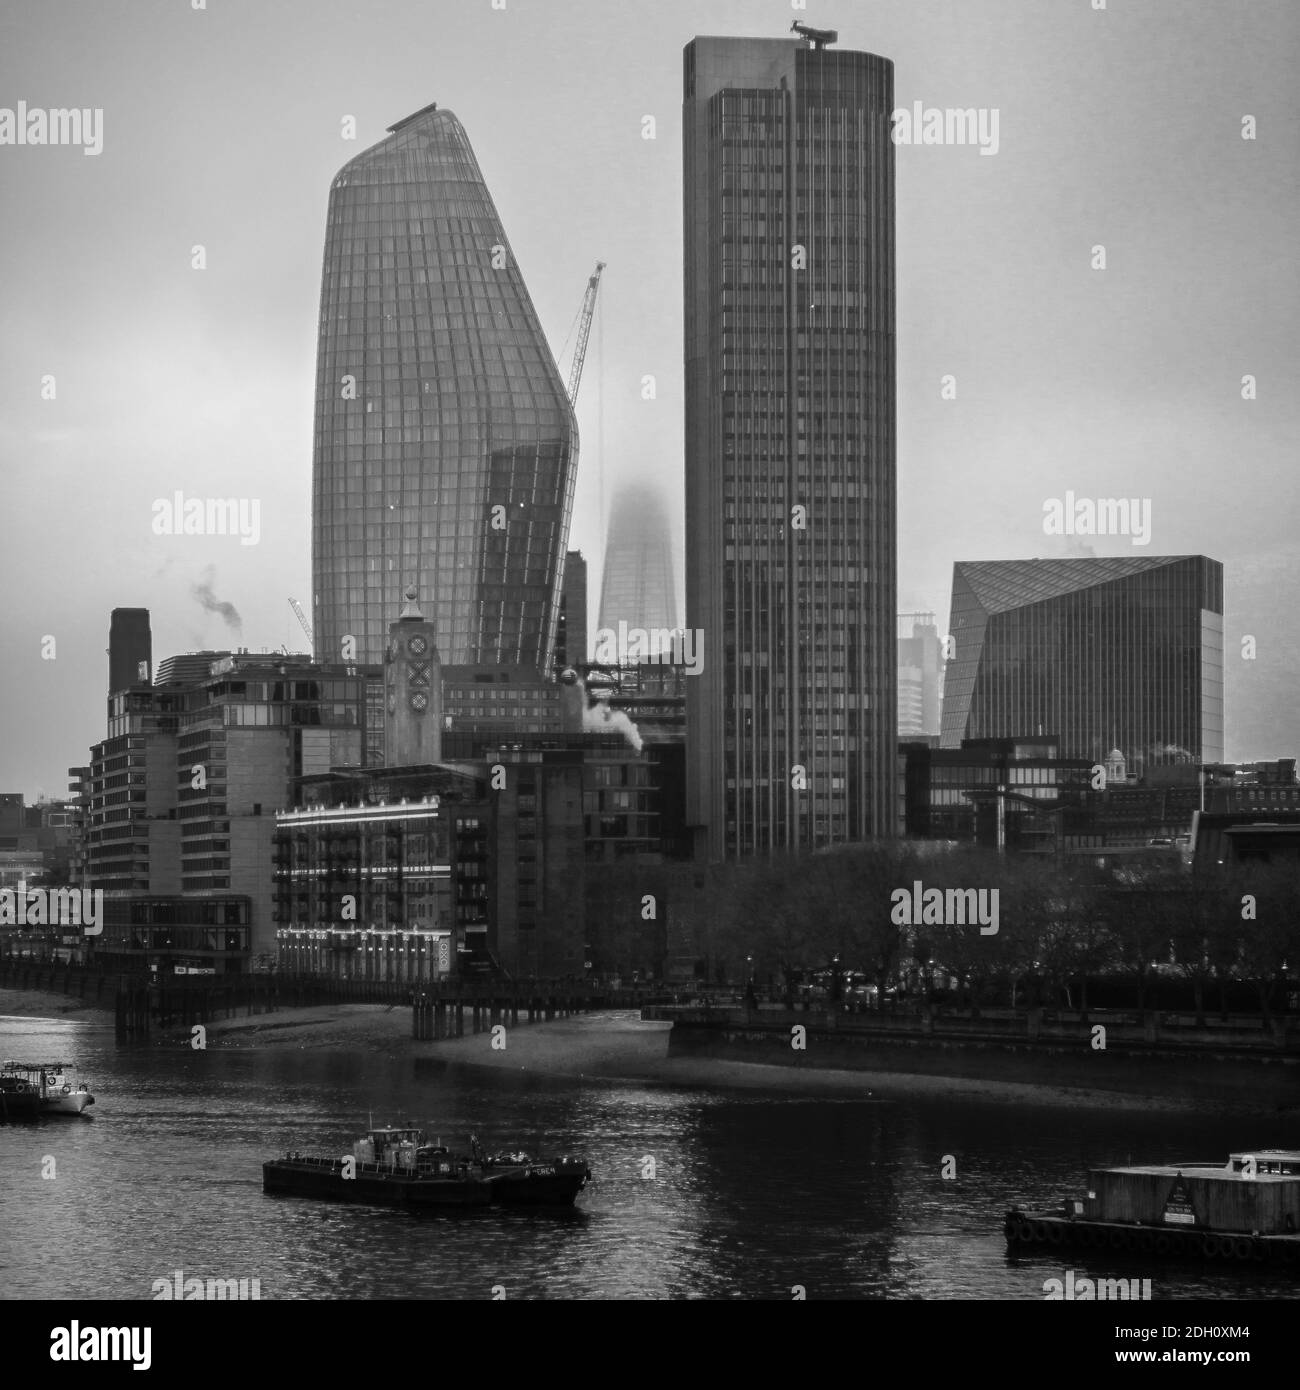 Das Shard-Gebäude ist nur teilweise sichtbar, da der Nebel London umhüllt. Stockfoto